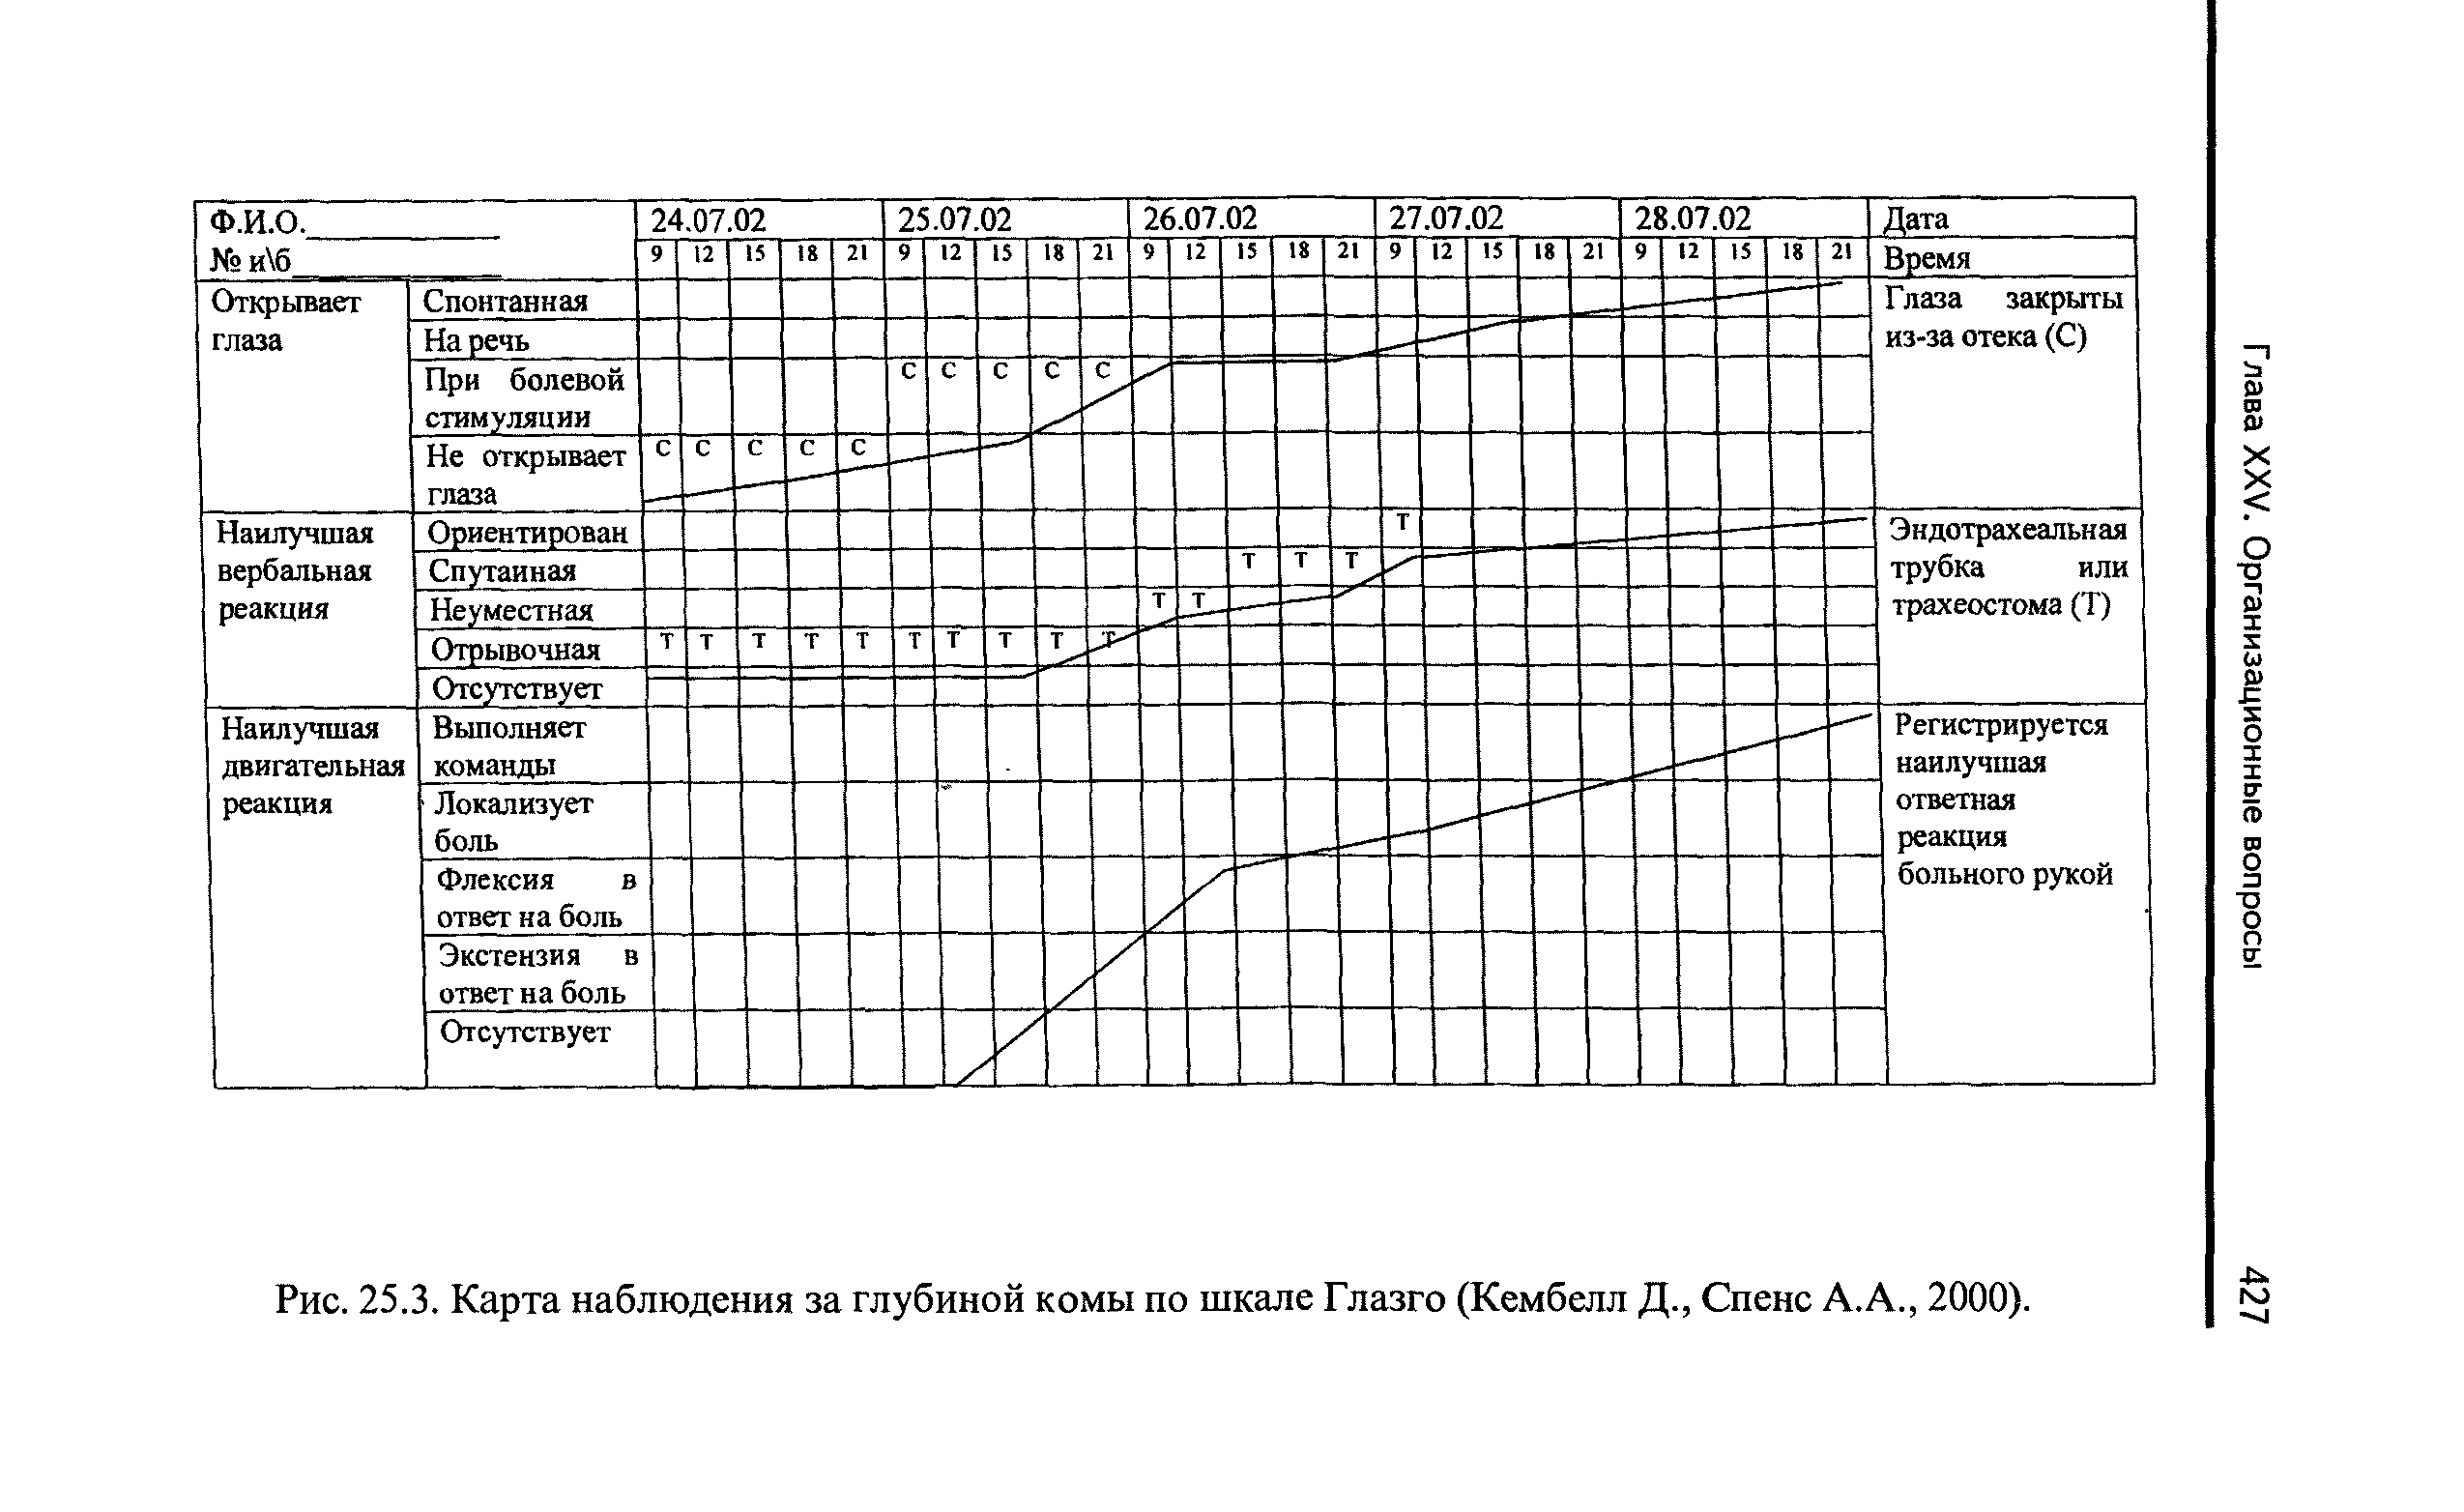 Рис. 25.3. Карта наблюдения за глубиной комы по шкале Глазго (Кембелл Д., Спенс А.А., 2000).